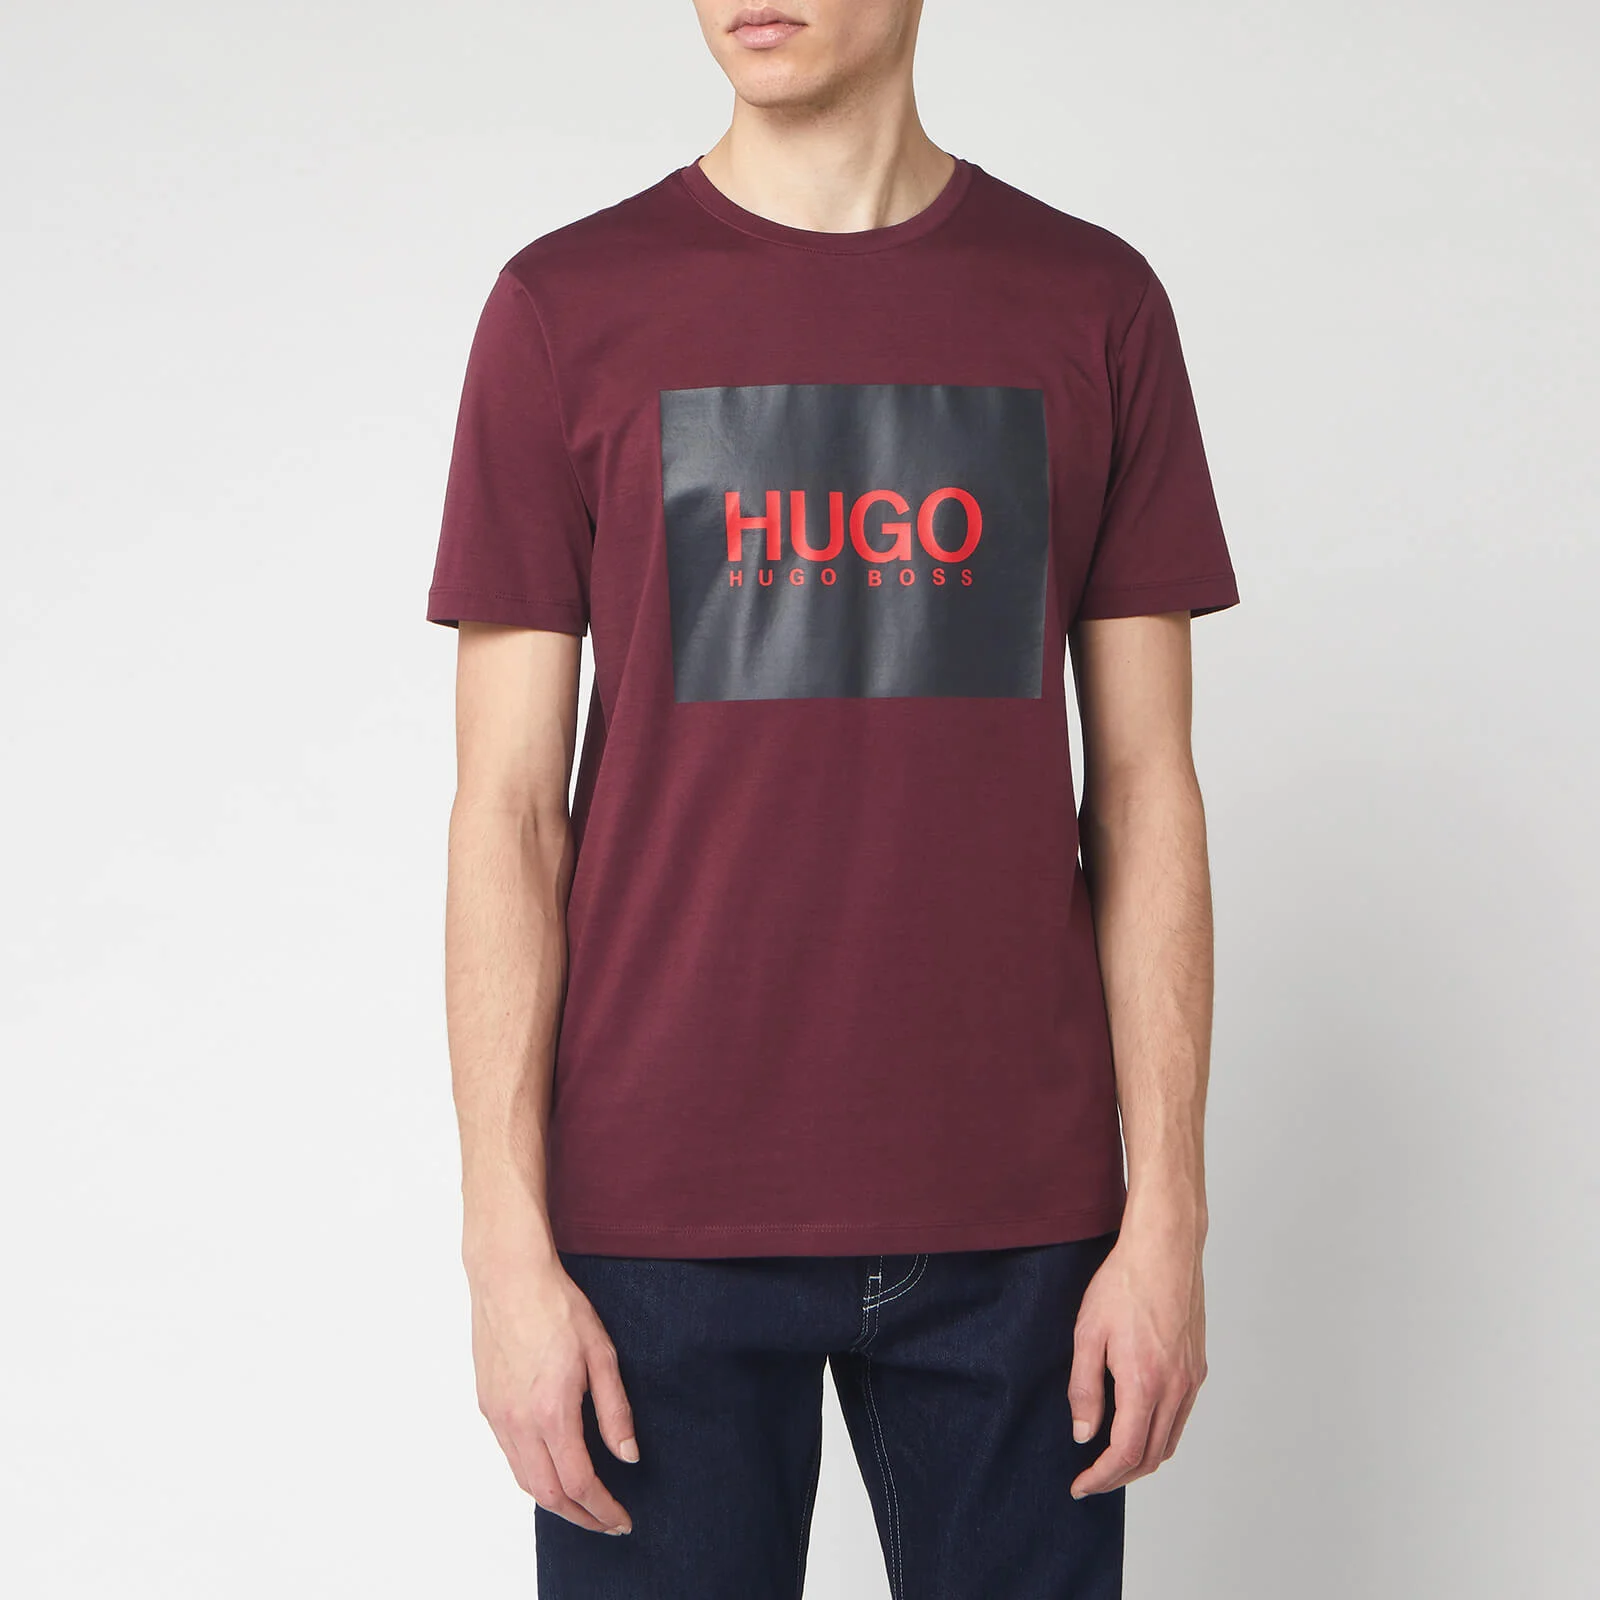 HUGO Men's Dolive 201 T-Shirt - Dark Red Image 1